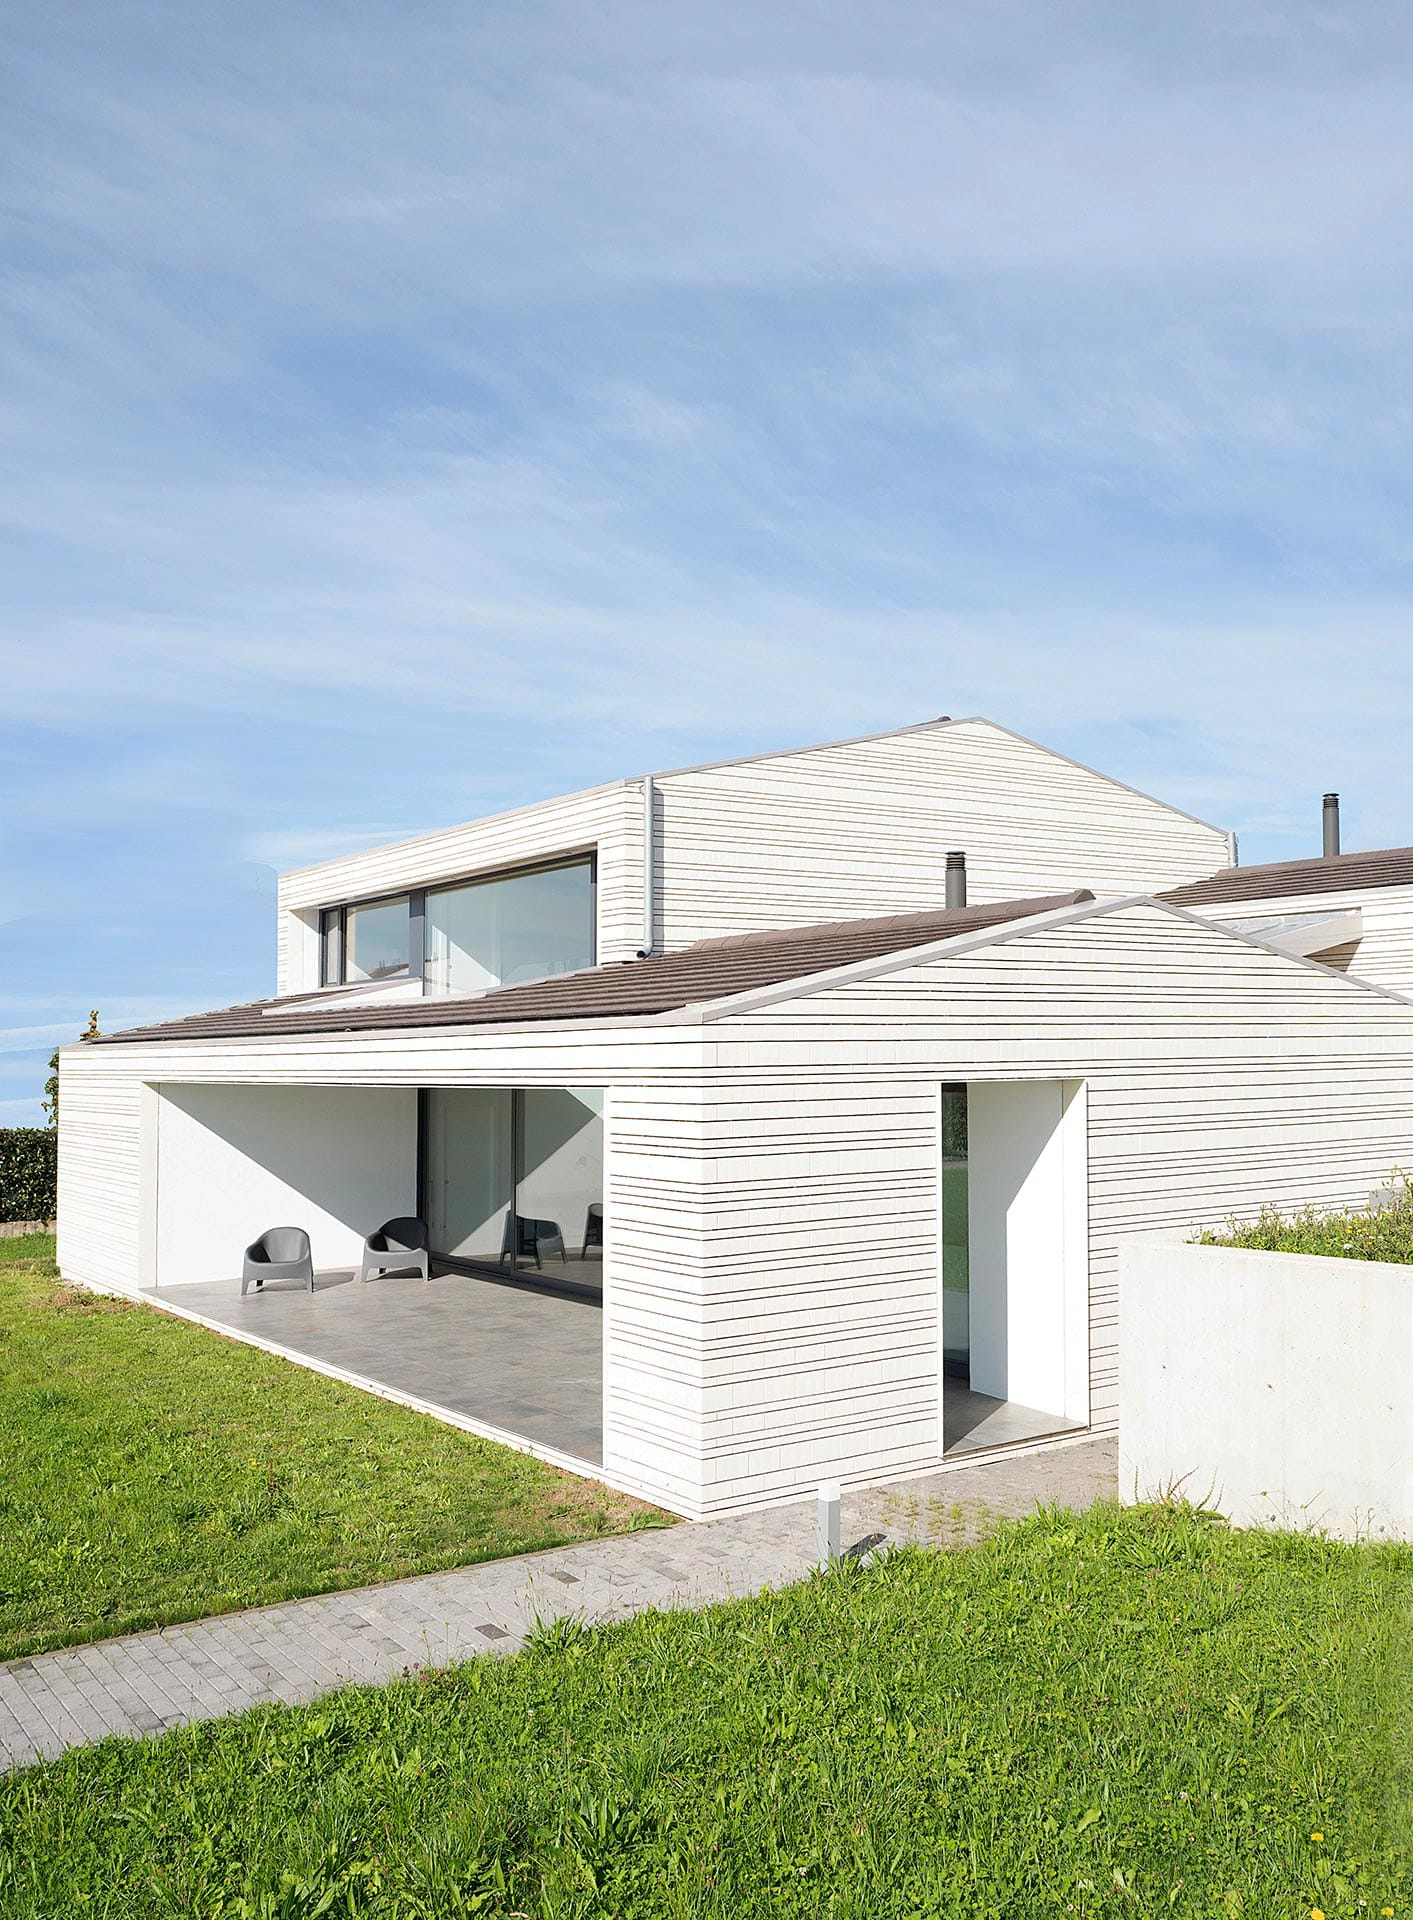 Casa en ladrillo blanco y grandes ventanales diseñada por Moah Arquitectos en Villaverde, Cantabria